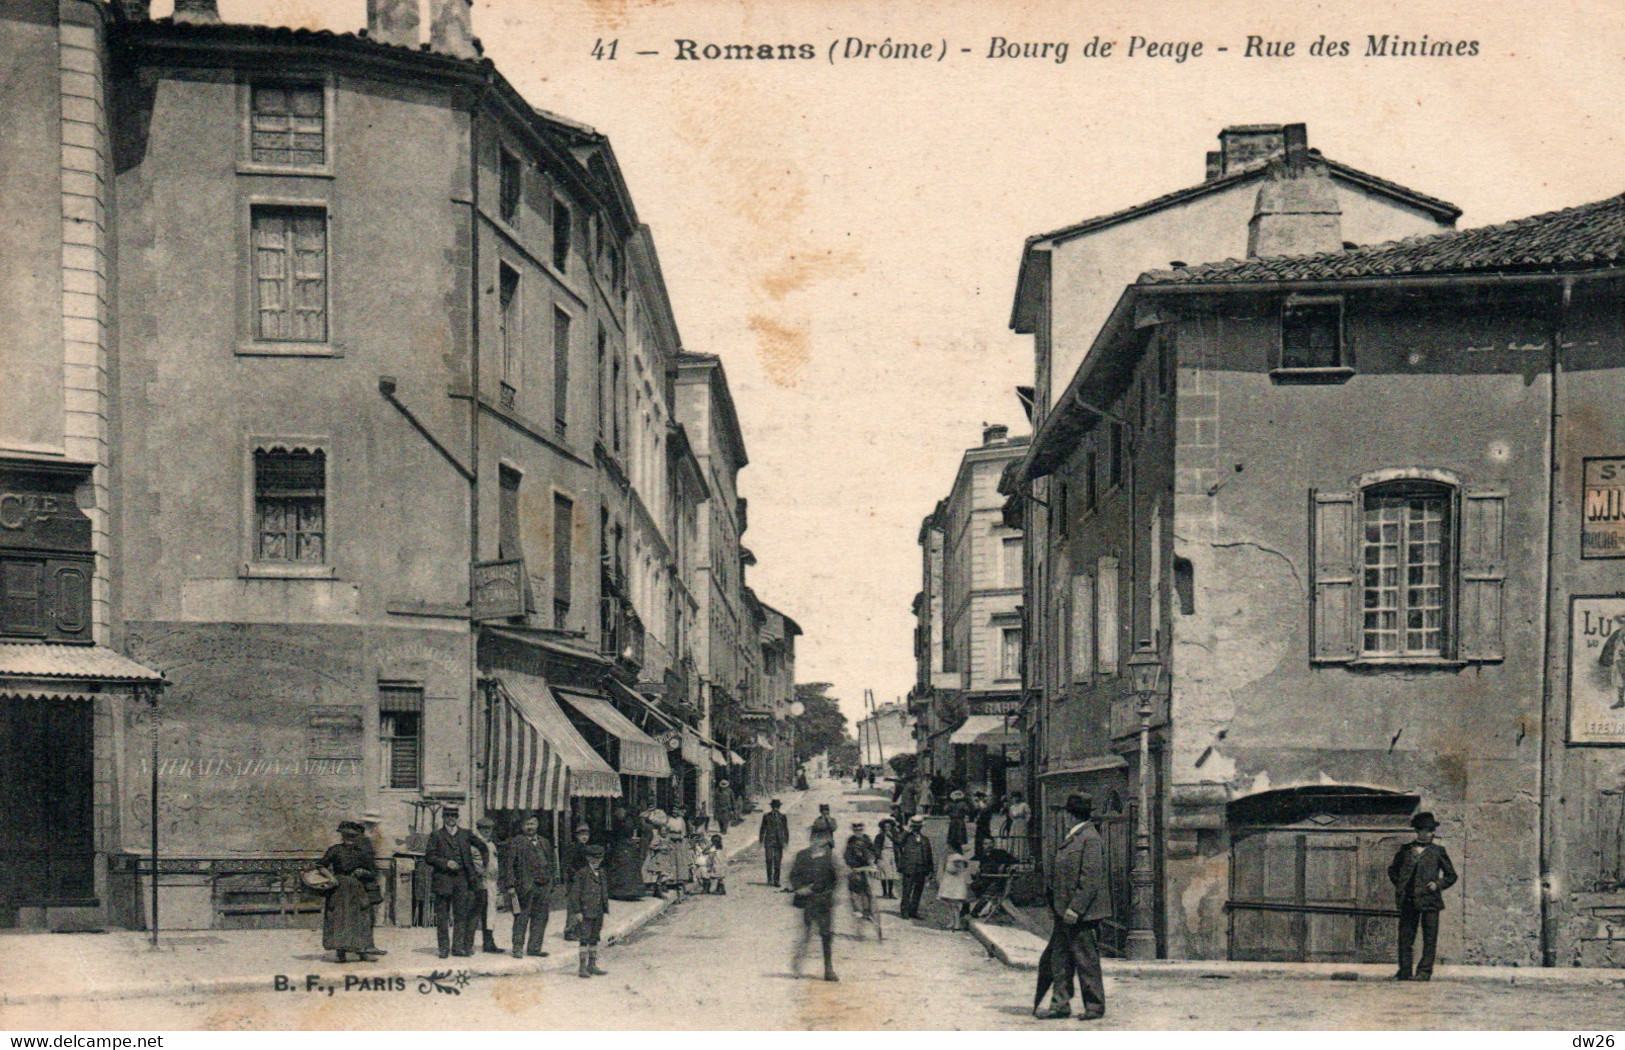 Bourg De Péage (Drôme) Rue Des Minimes, Entrée Sur La Place Du Marché - Edition B.F. Paris - Carte Animée N° 41 - Bourg-de-Péage